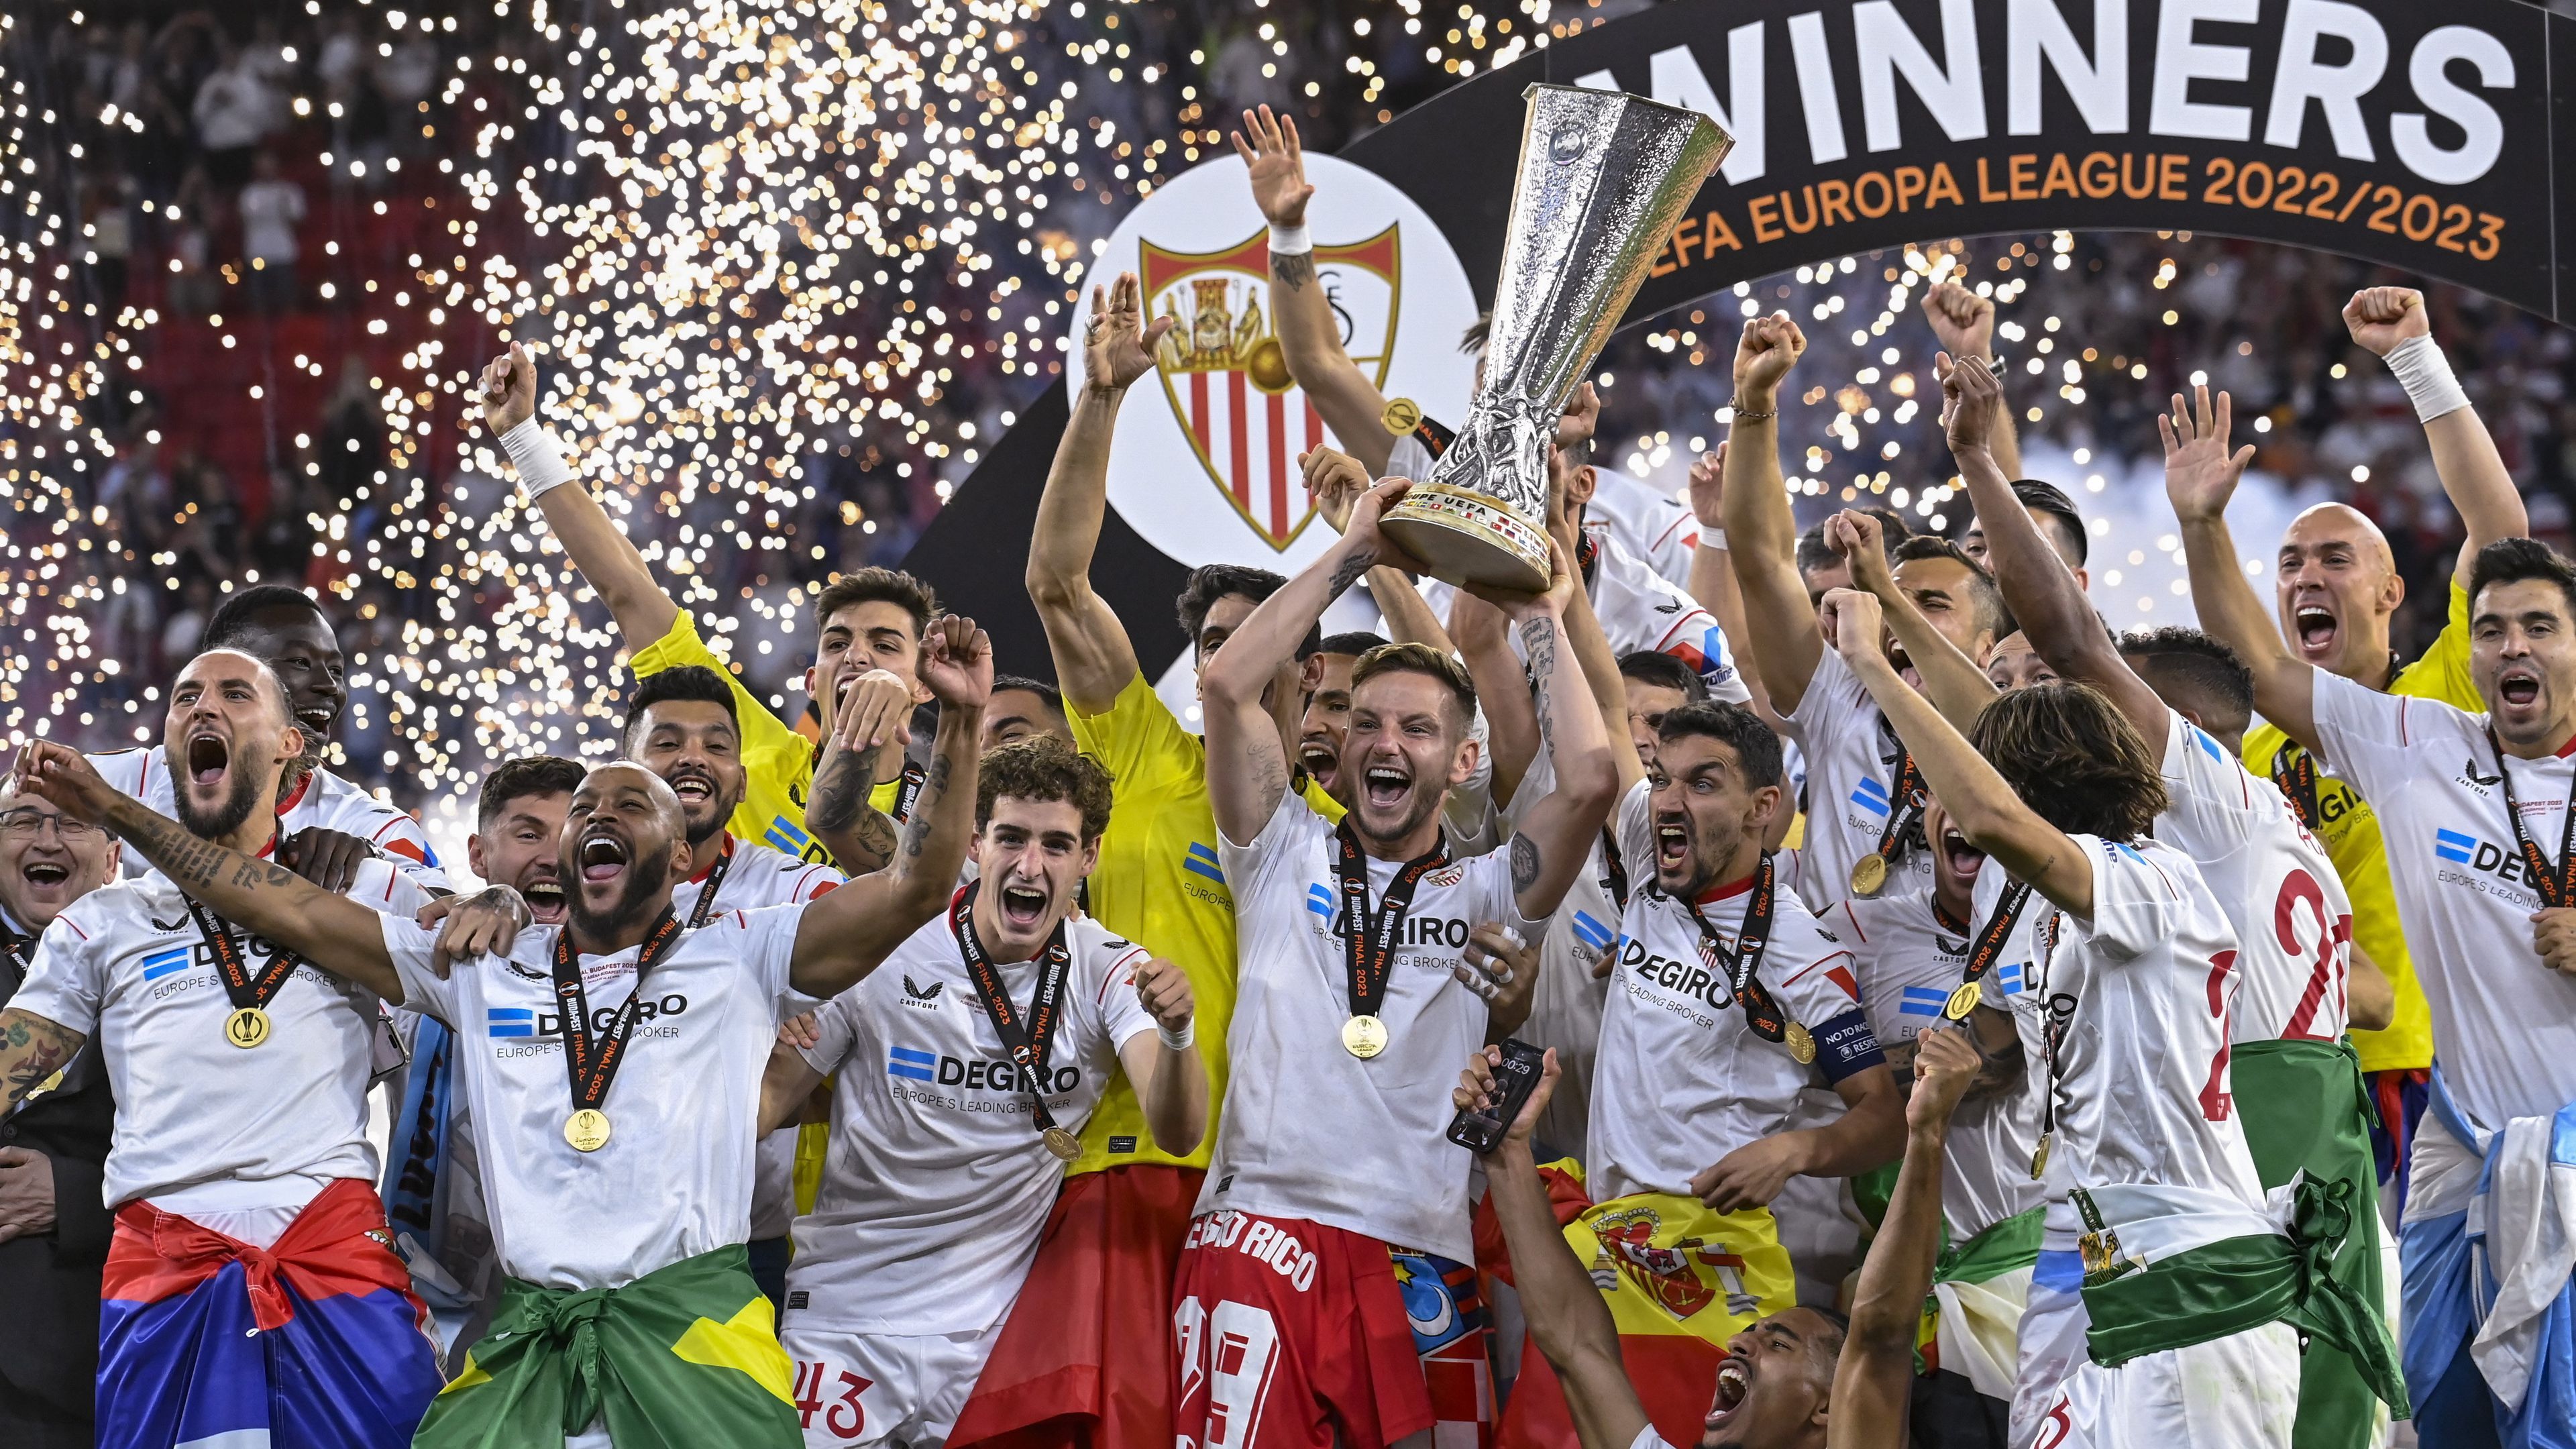 A Sevilla nyert Budapesten; José Mourinho bírózott; Fucsovics Márton kiesett – reggeli hírösszefoglaló